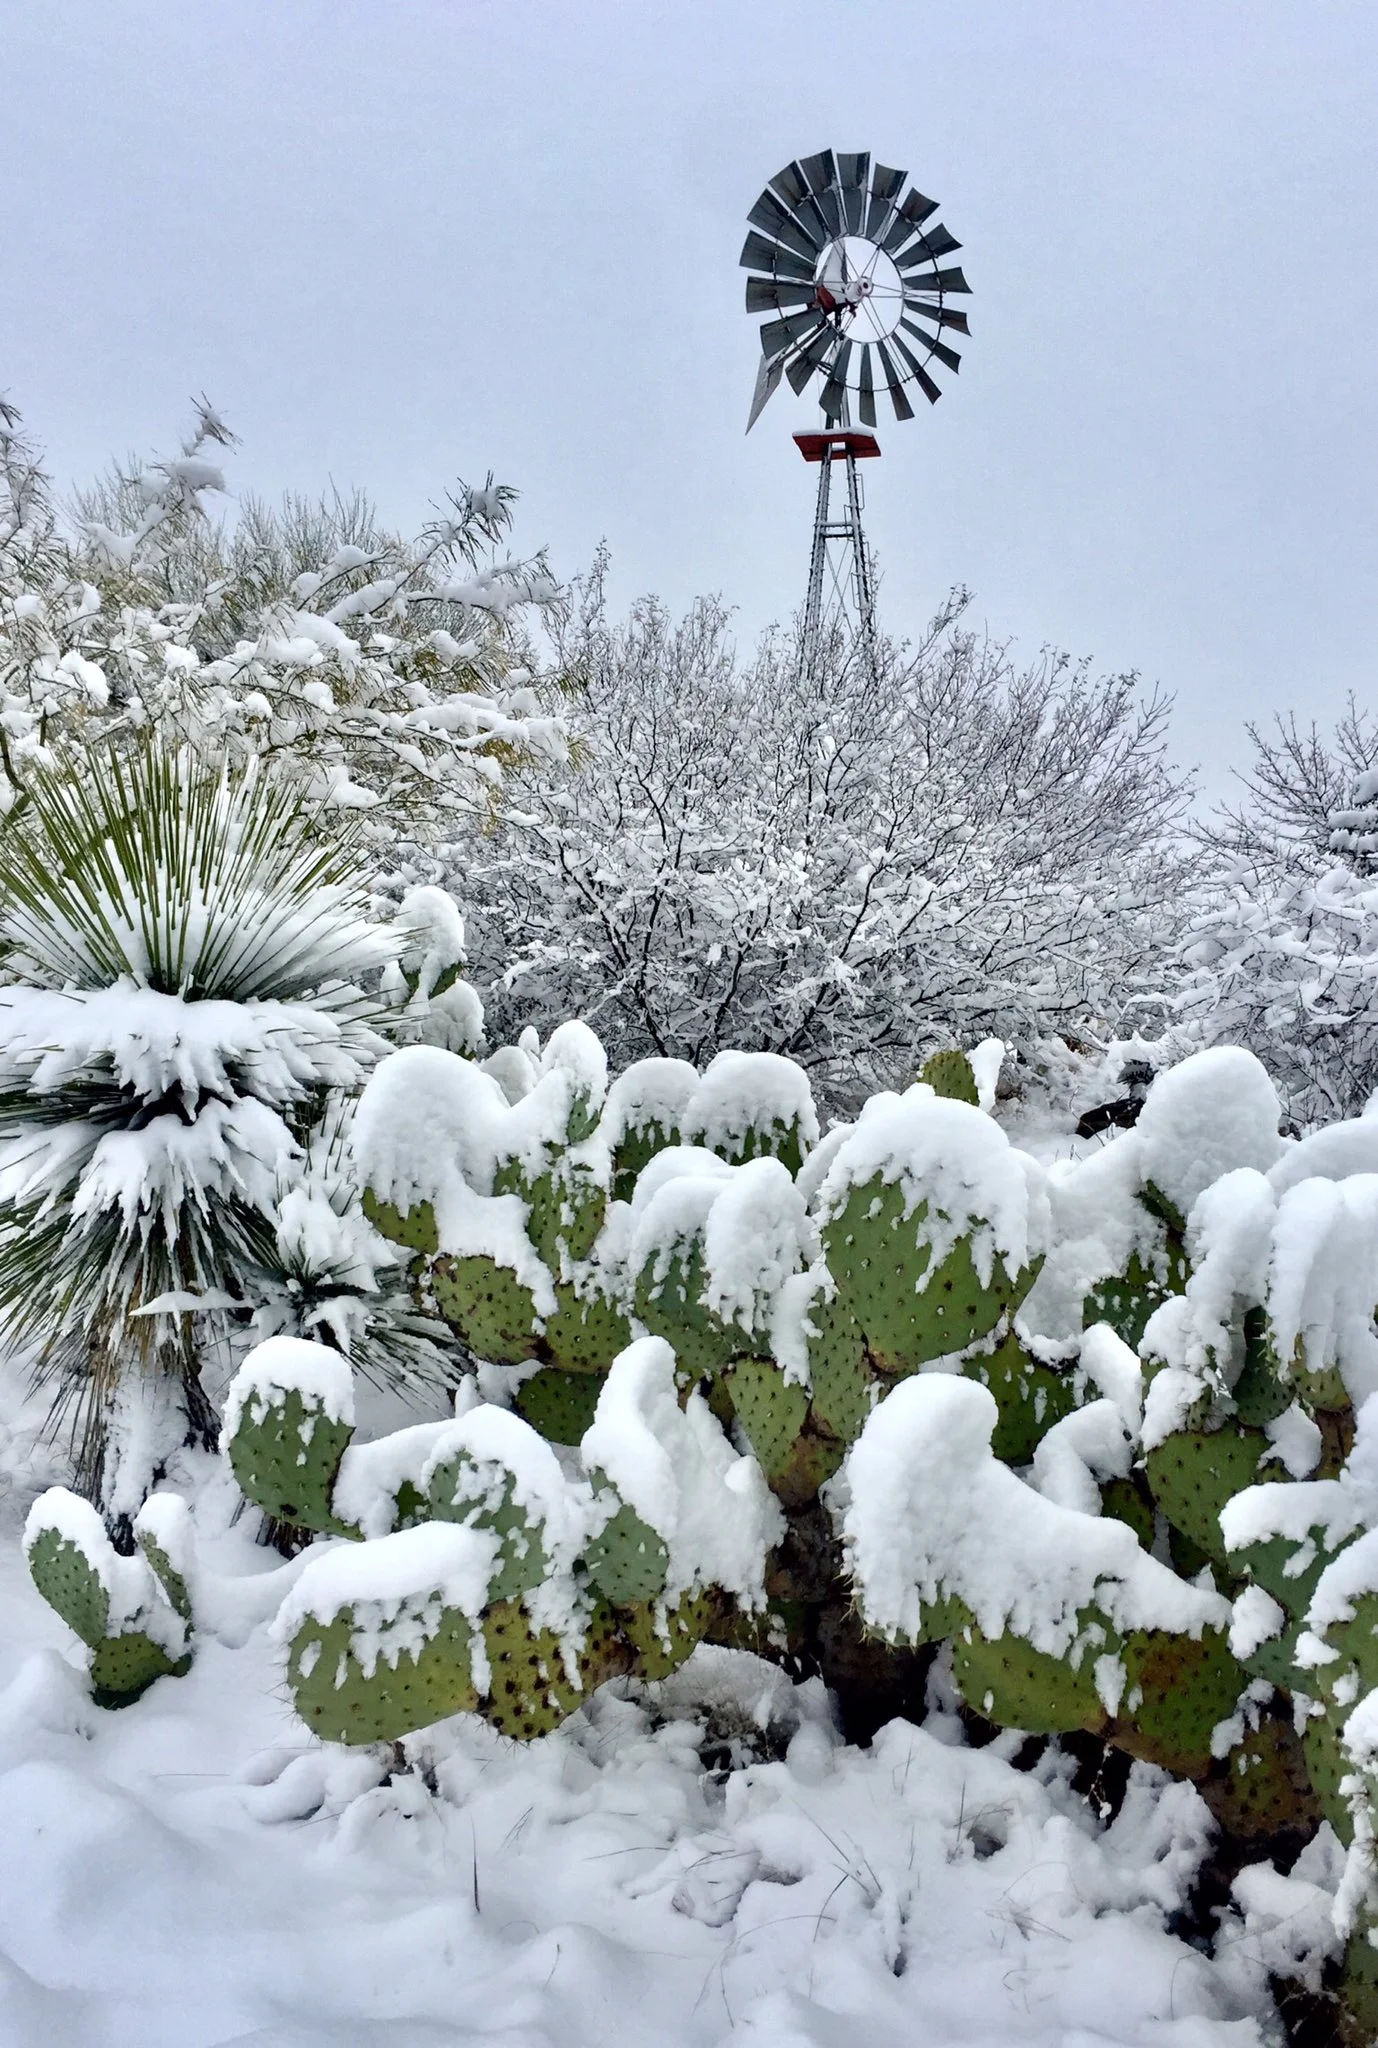 В спекотній Аризоні випав сніг: засніжені кактуси - дуже дивне видовище - фото 418495